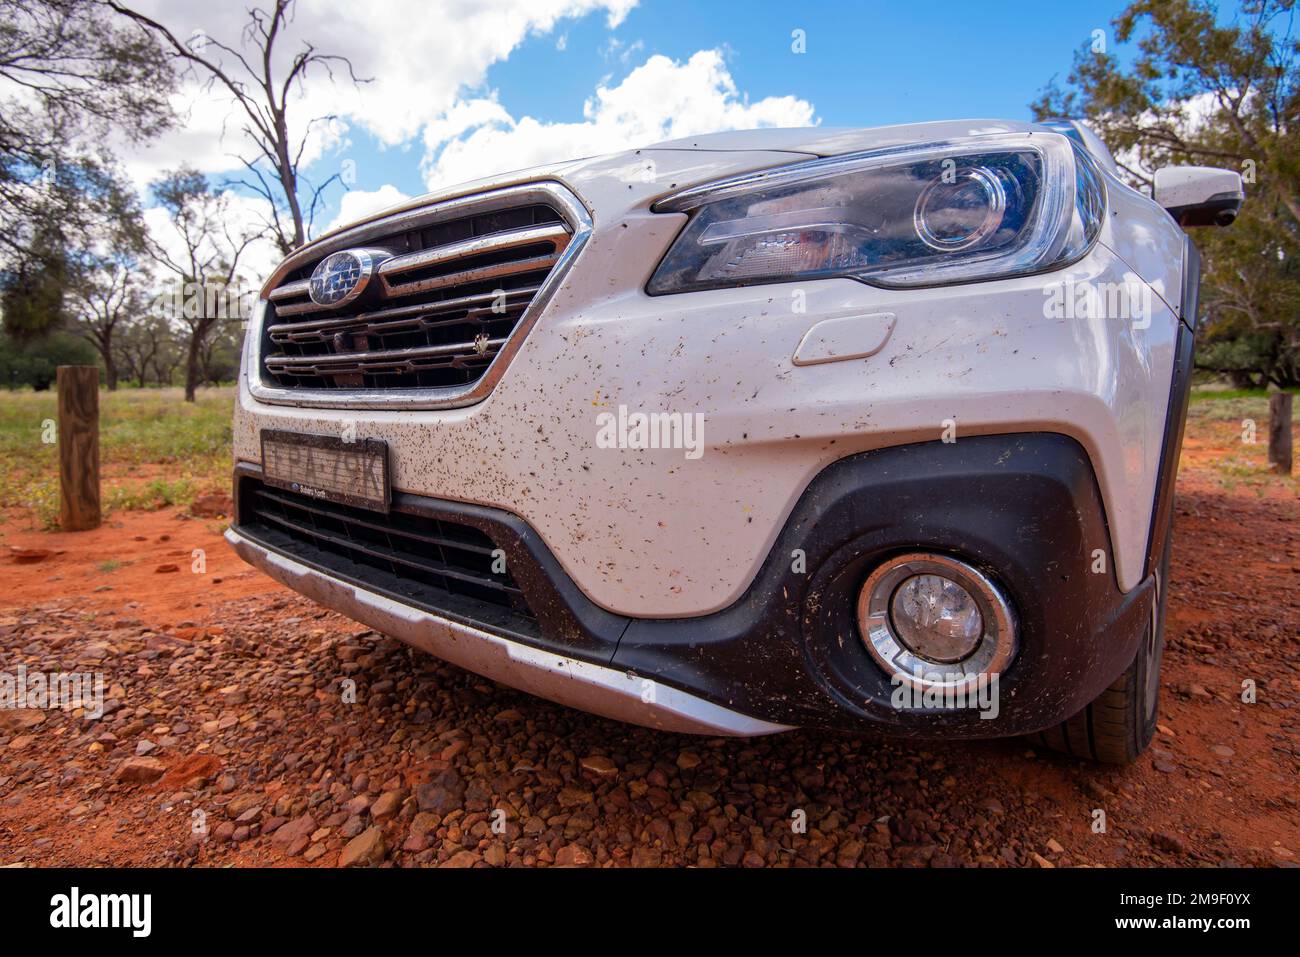 Un gros plan de l'avant d'une voiture Subaru Outback 2018 recouverte de insectes et d'insectes écrasés provenant de l'Outback dans l'Outback de la Nouvelle-Galles du Sud, en Australie Banque D'Images